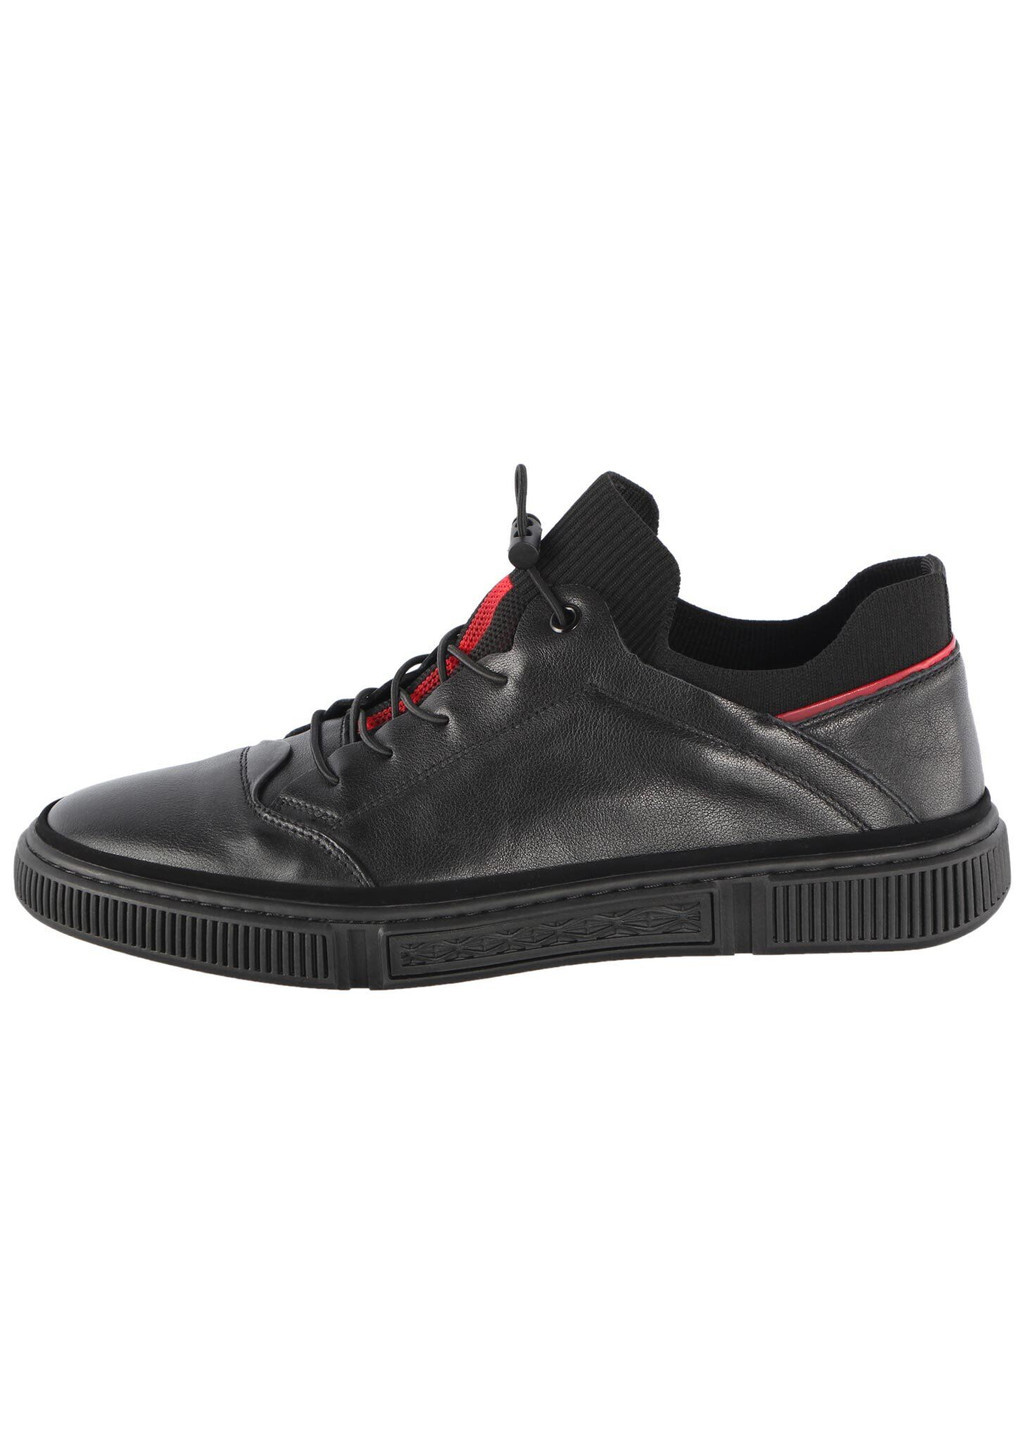 Черные демисезонные мужские кроссовки 195677 Lifexpert